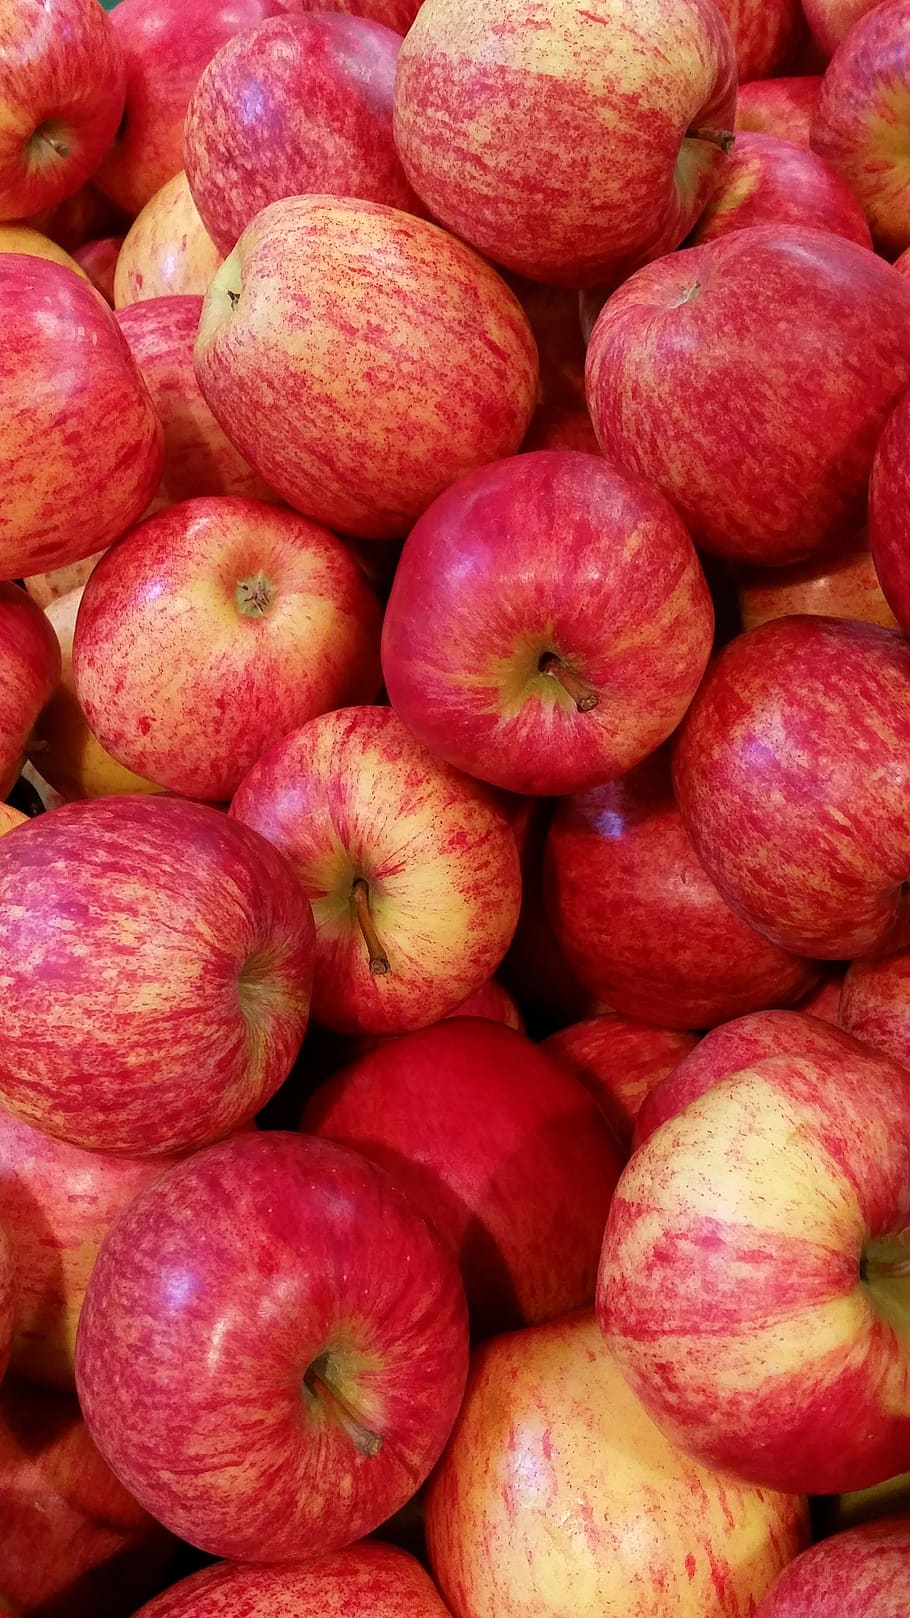 manzana, rojo, fruta, saludable, vitaminas, alimentos, salud, manzana roja, mercado local de agricultores, fresco